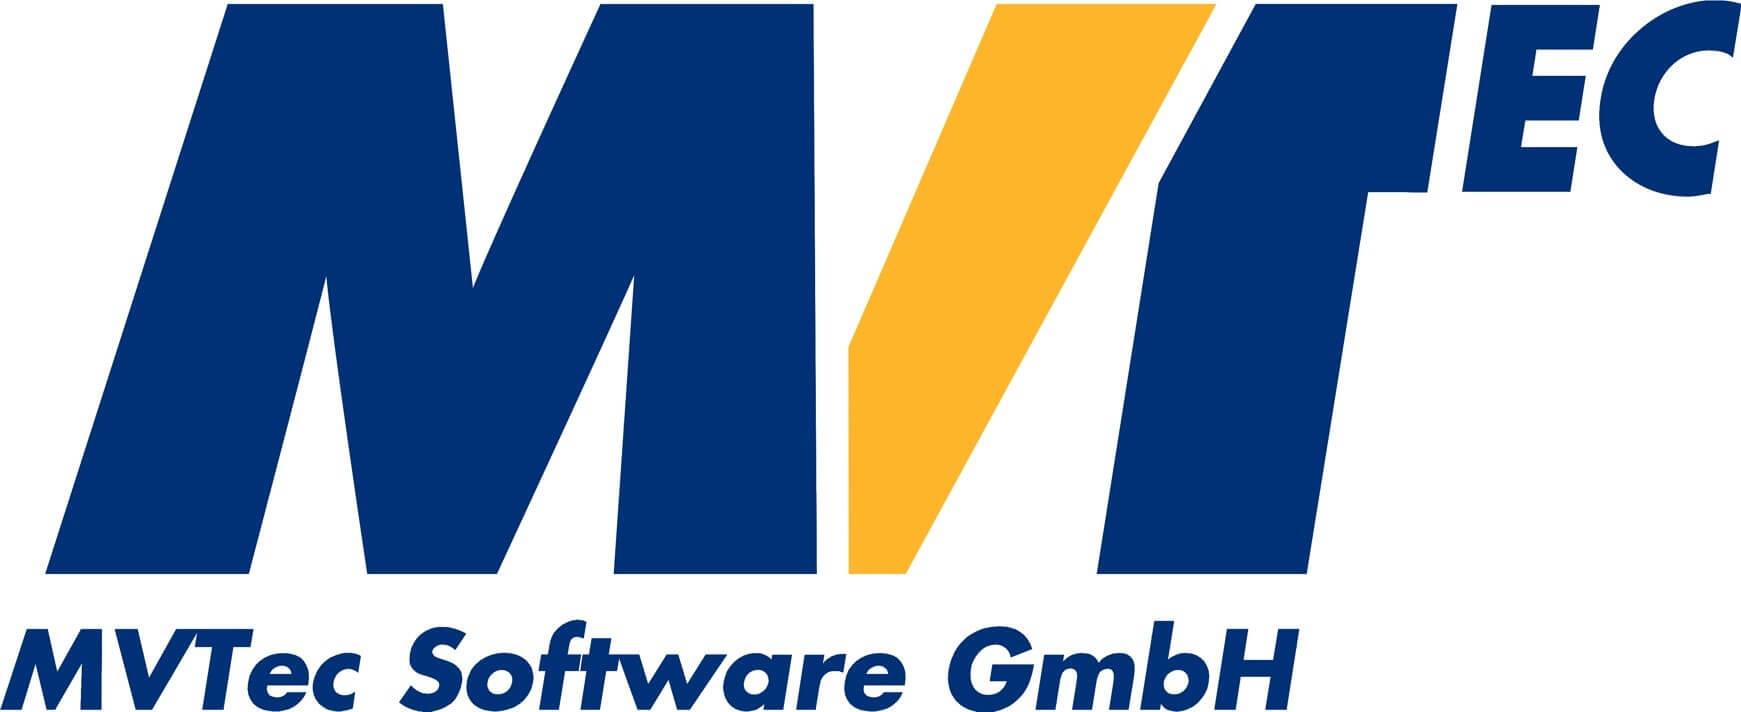 MVTec Software GmbH
&nbsp; &nbsp;&nbsp;<br />